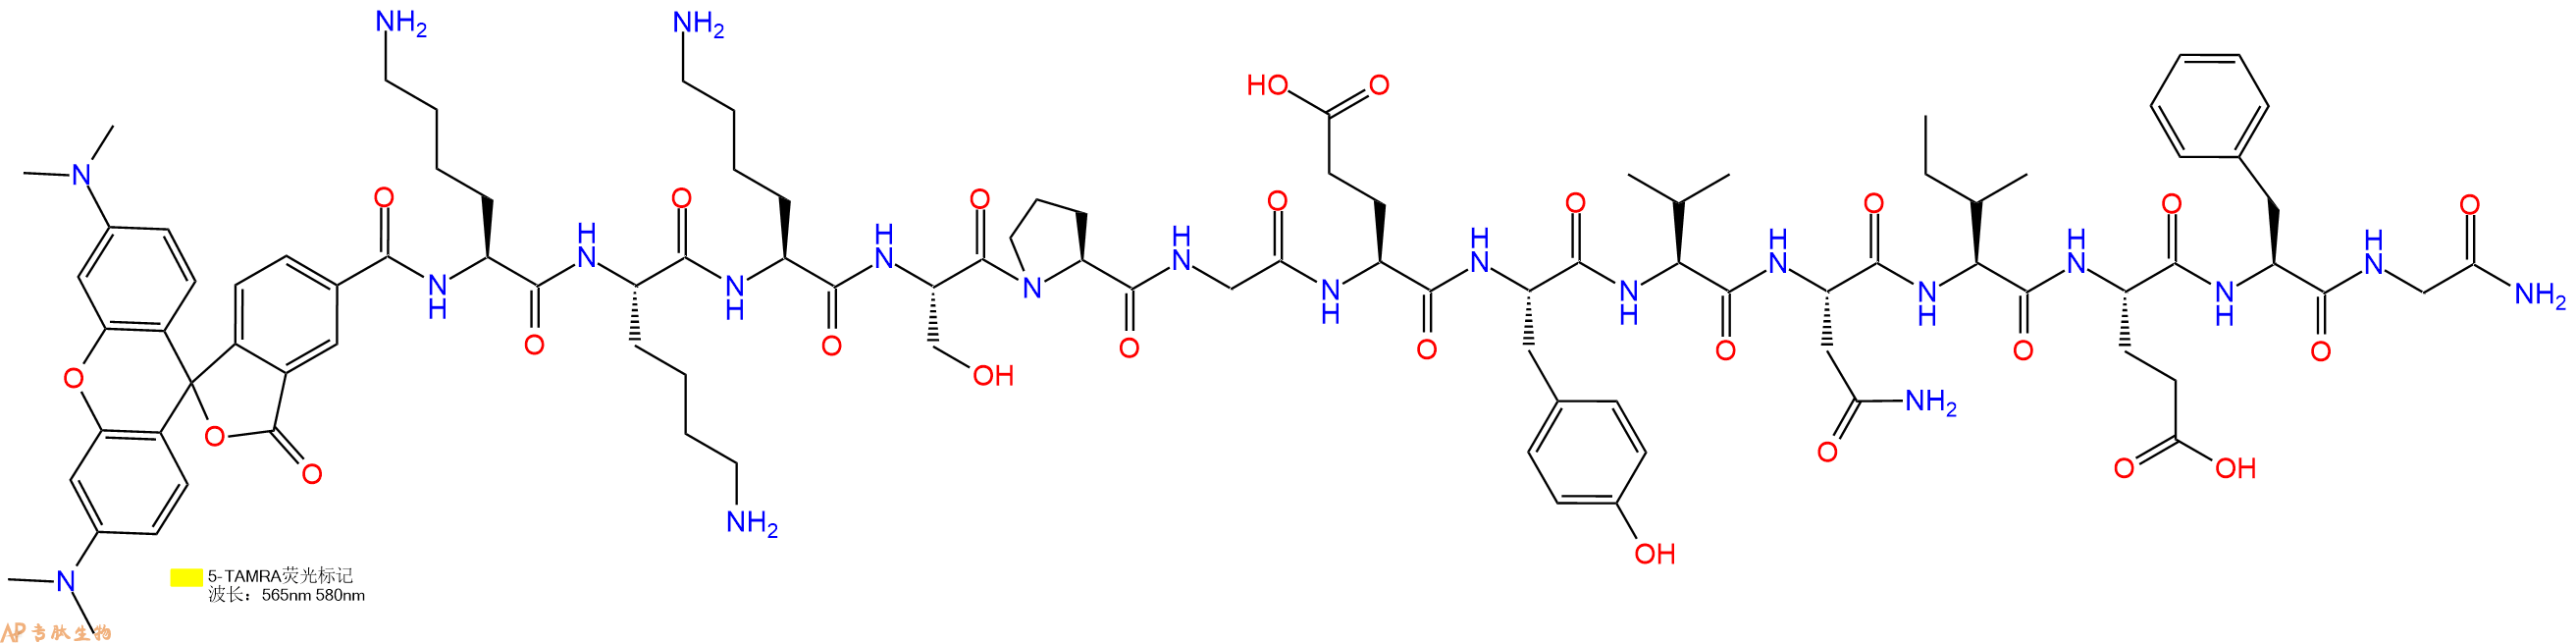 专肽生物产品5TAMRA-KKKSPGEYVNIEFG-NH2